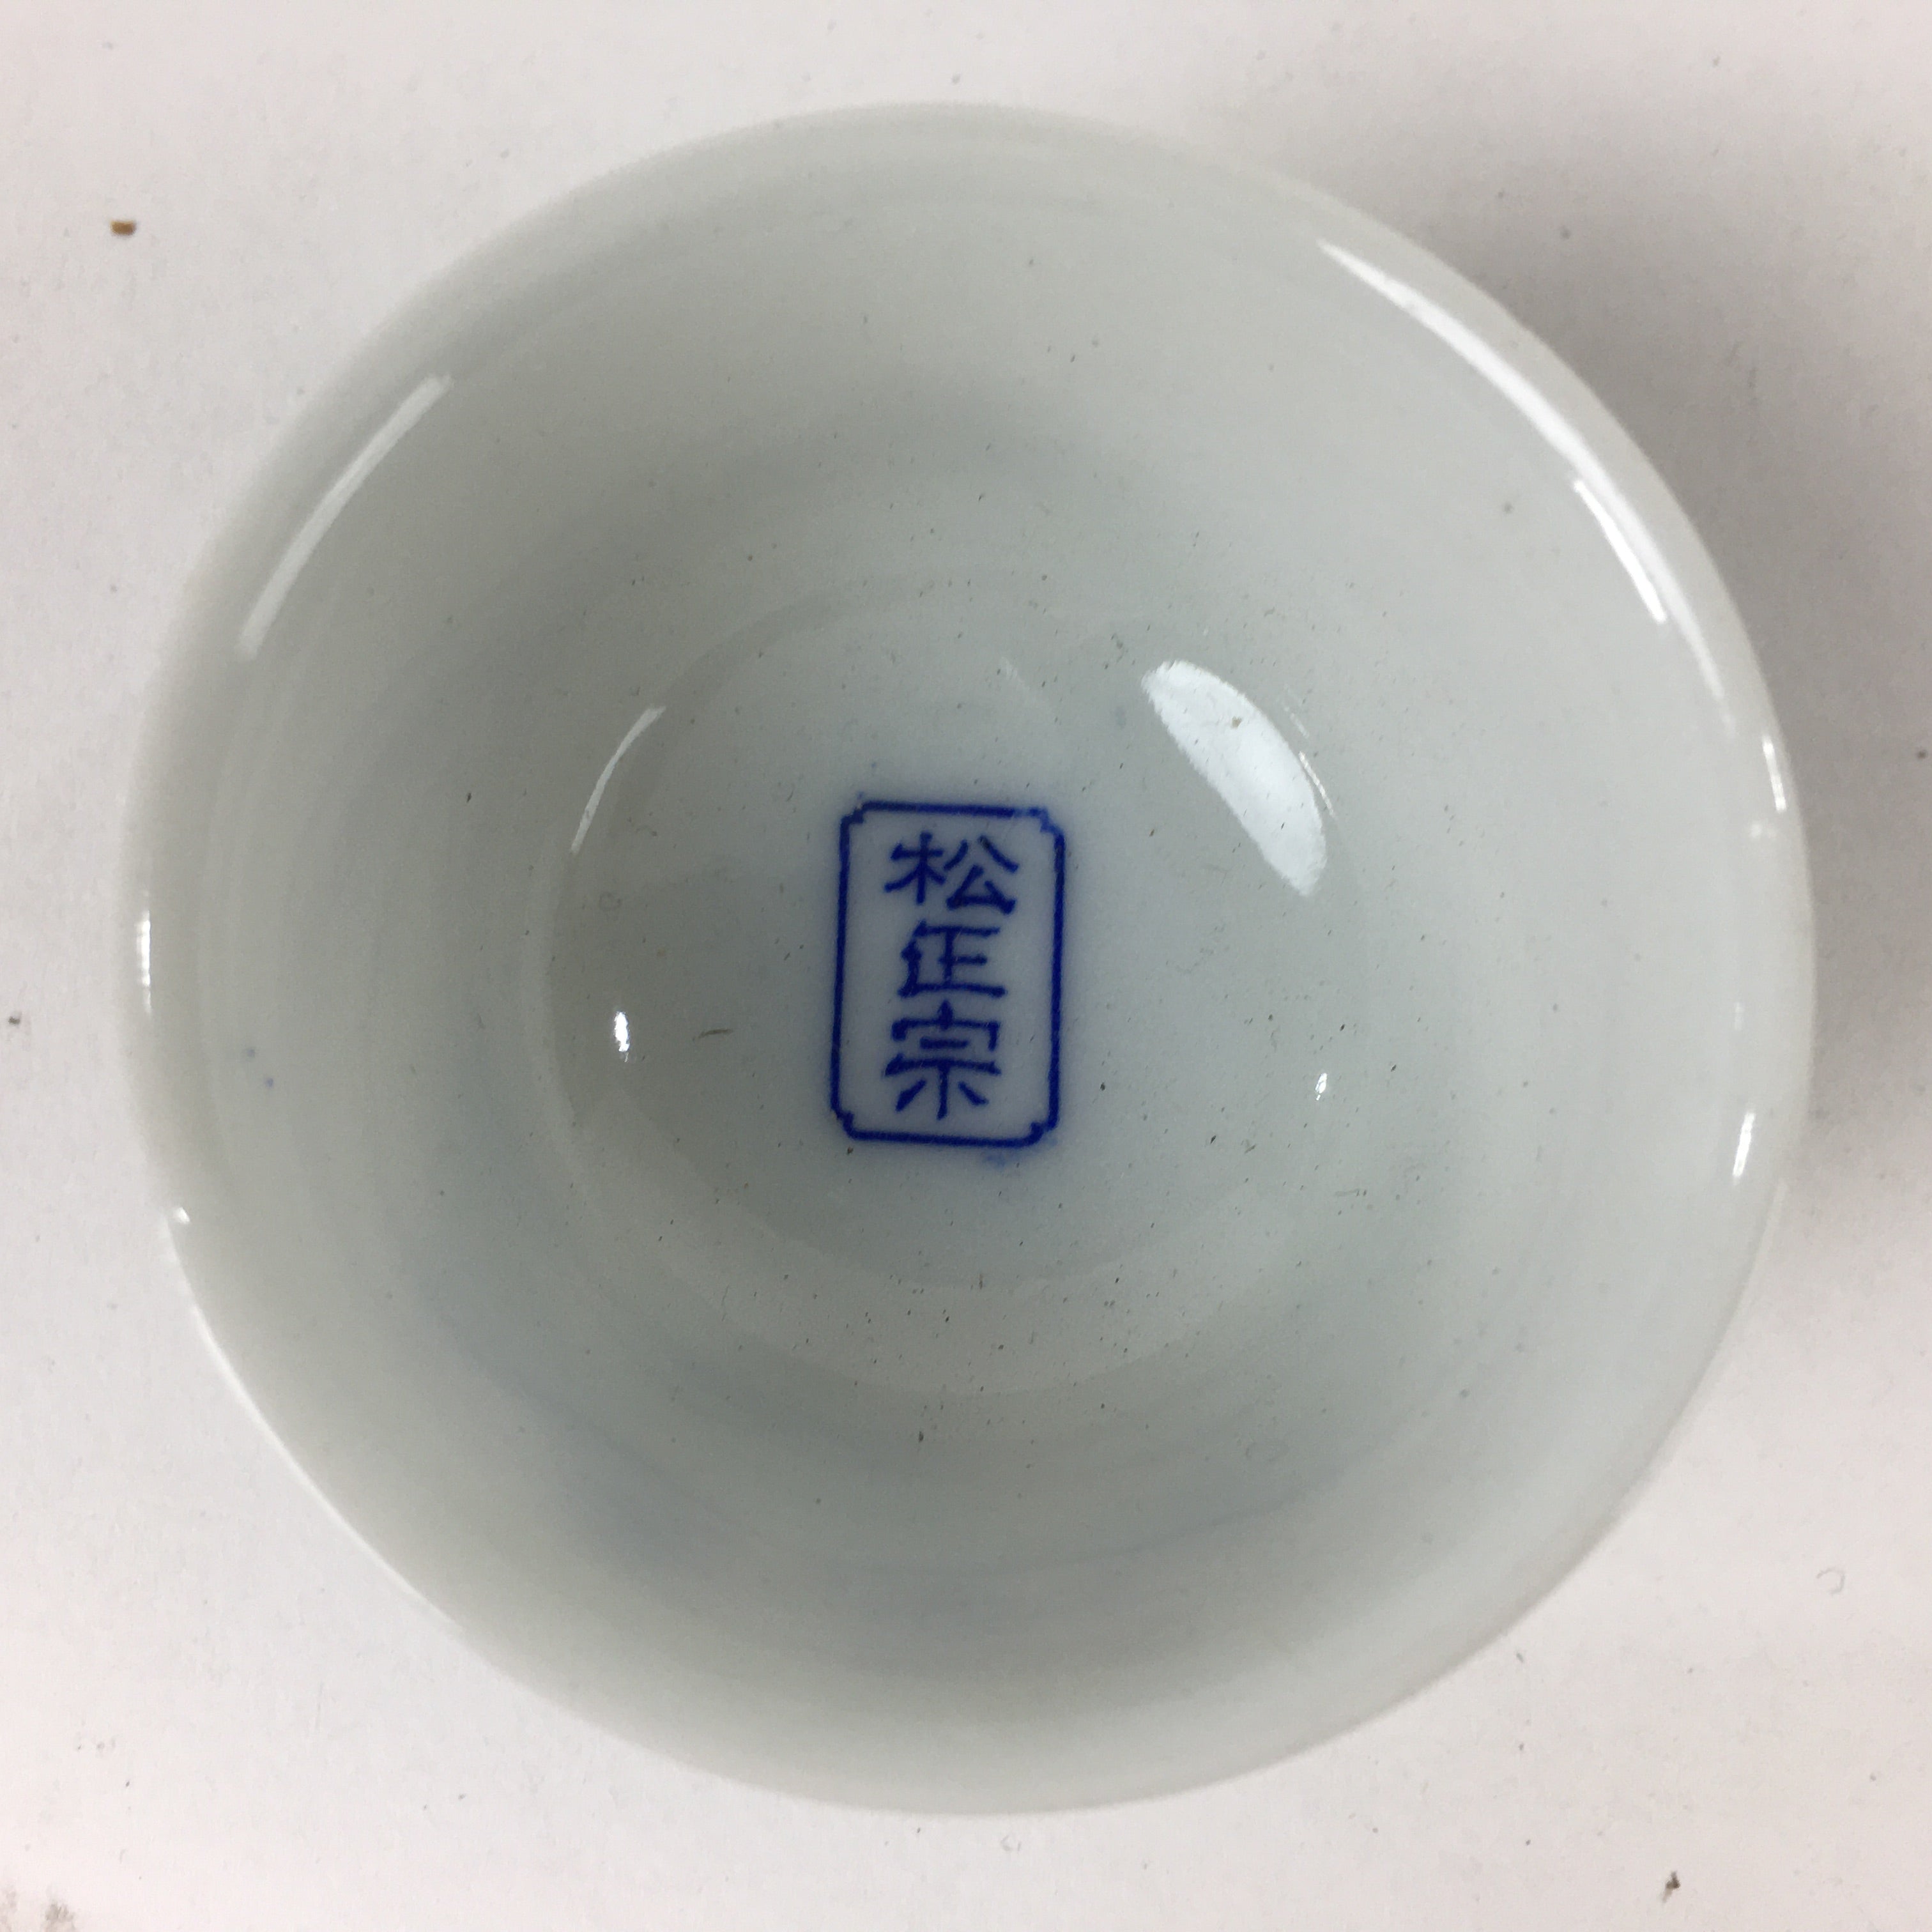 Japanese Porcelain Sake Cup Vtg Blue Pine Tree Design Guinomi Ochoko G37